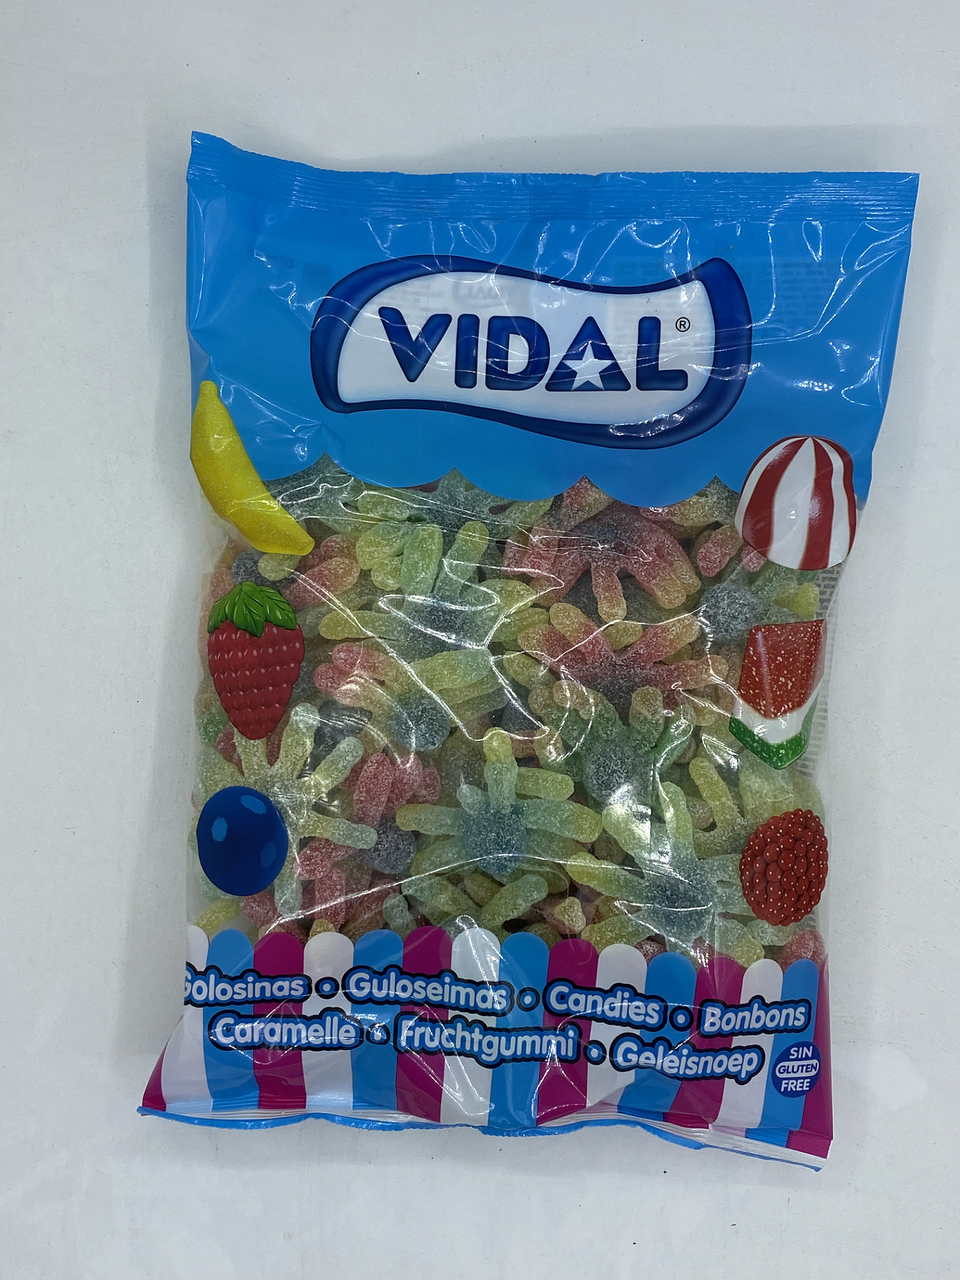 Vidal жевательный мармелад "Осьминоги кислые" 1000г